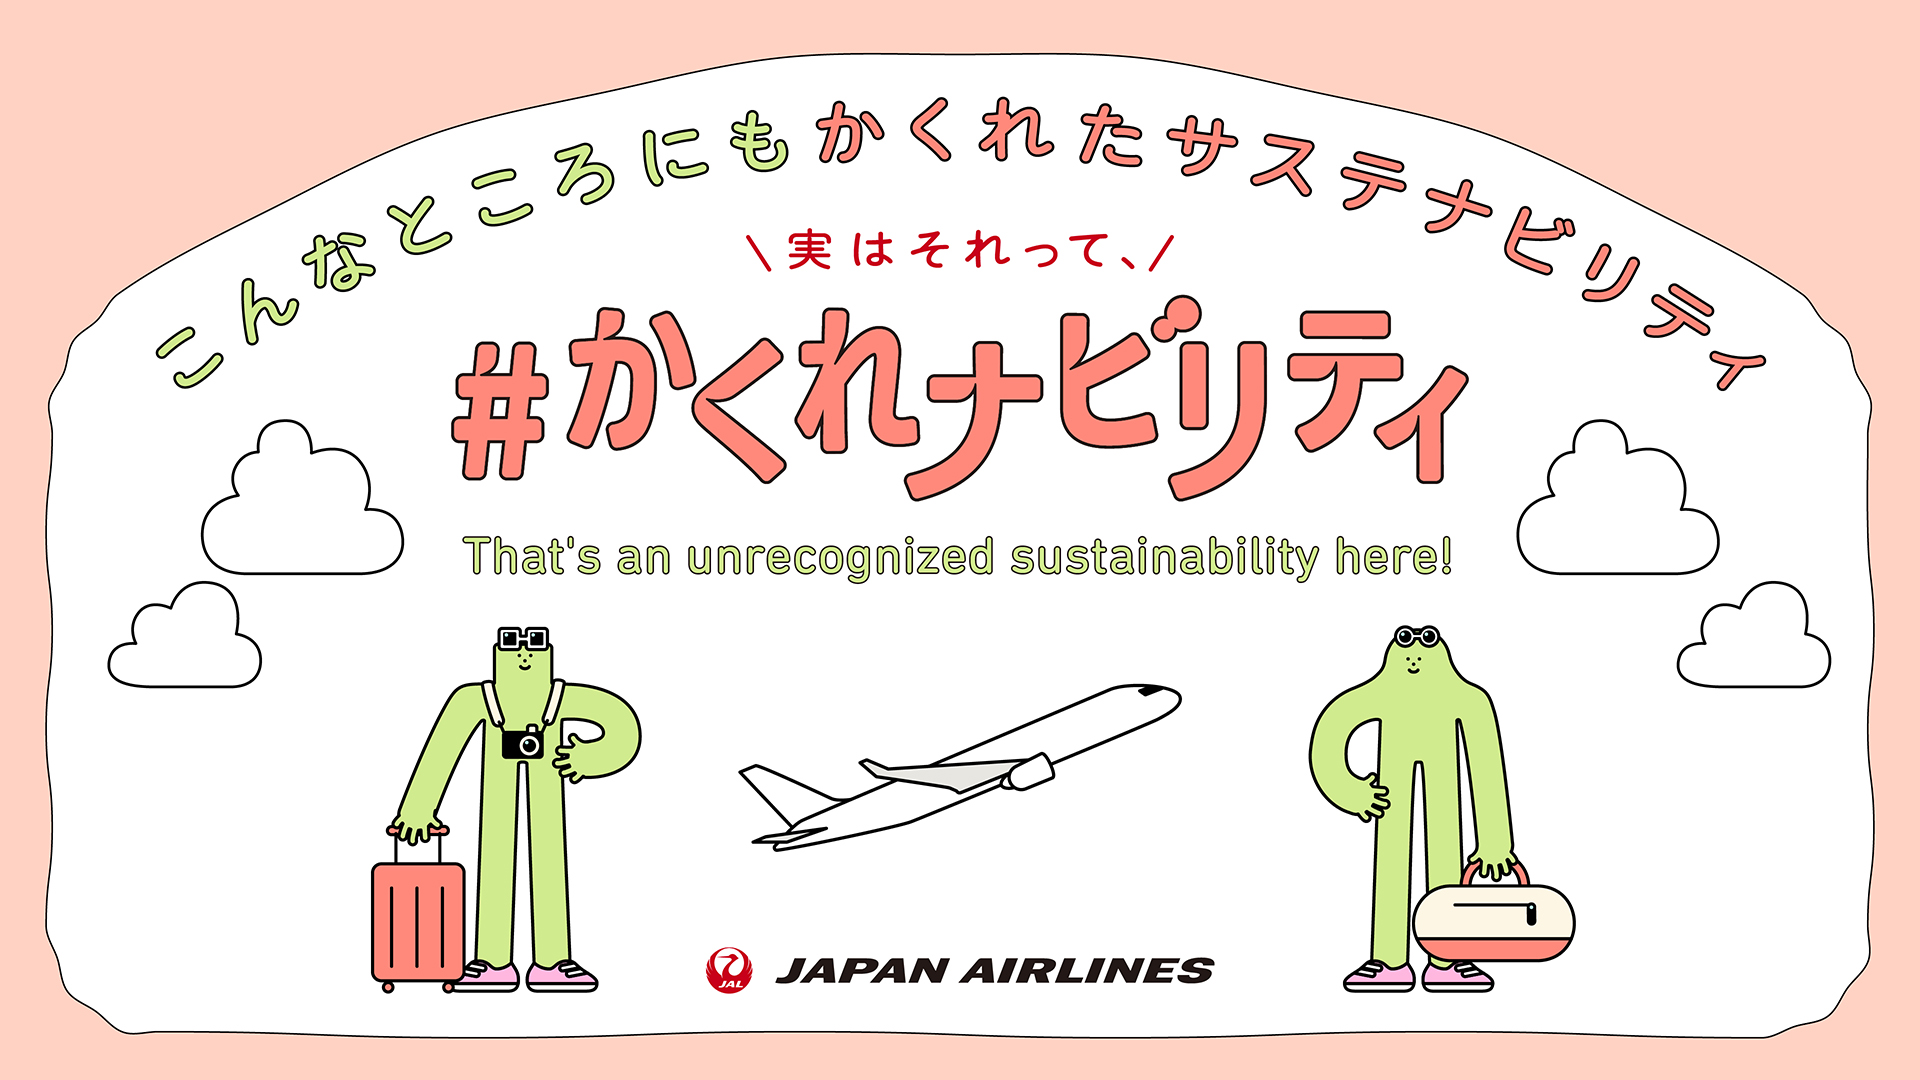 空の旅におけるかくれたサステナビリティ
＃かくれナビリティ 日本航空株式会社